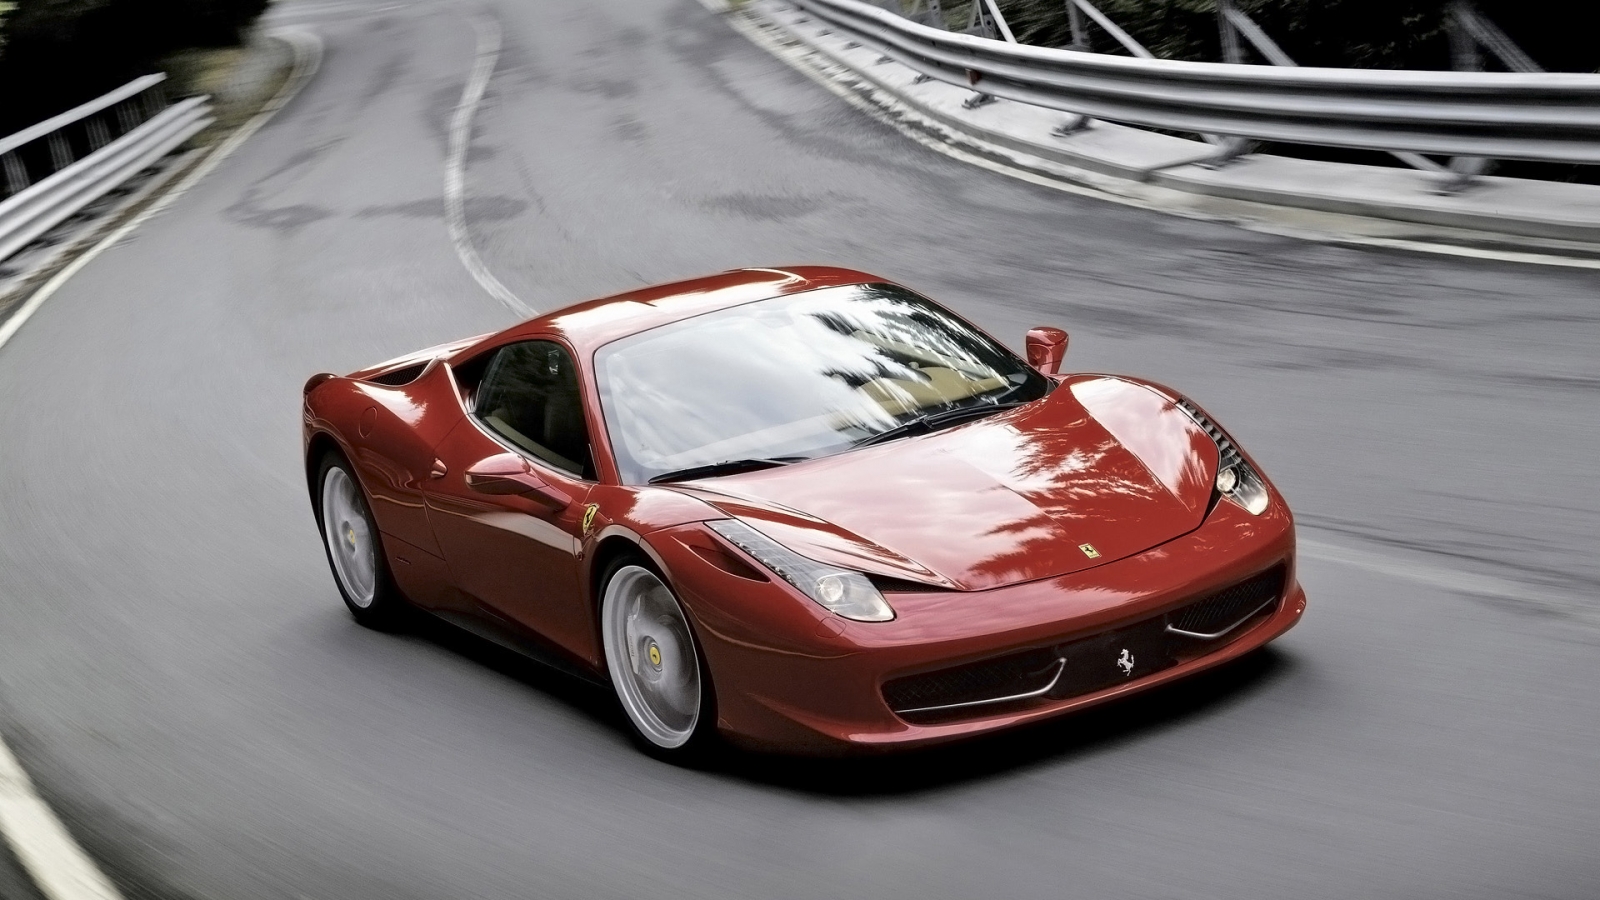 2011 Ferrari 458 Italia Red Speed for 1600 x 900 HDTV resolution